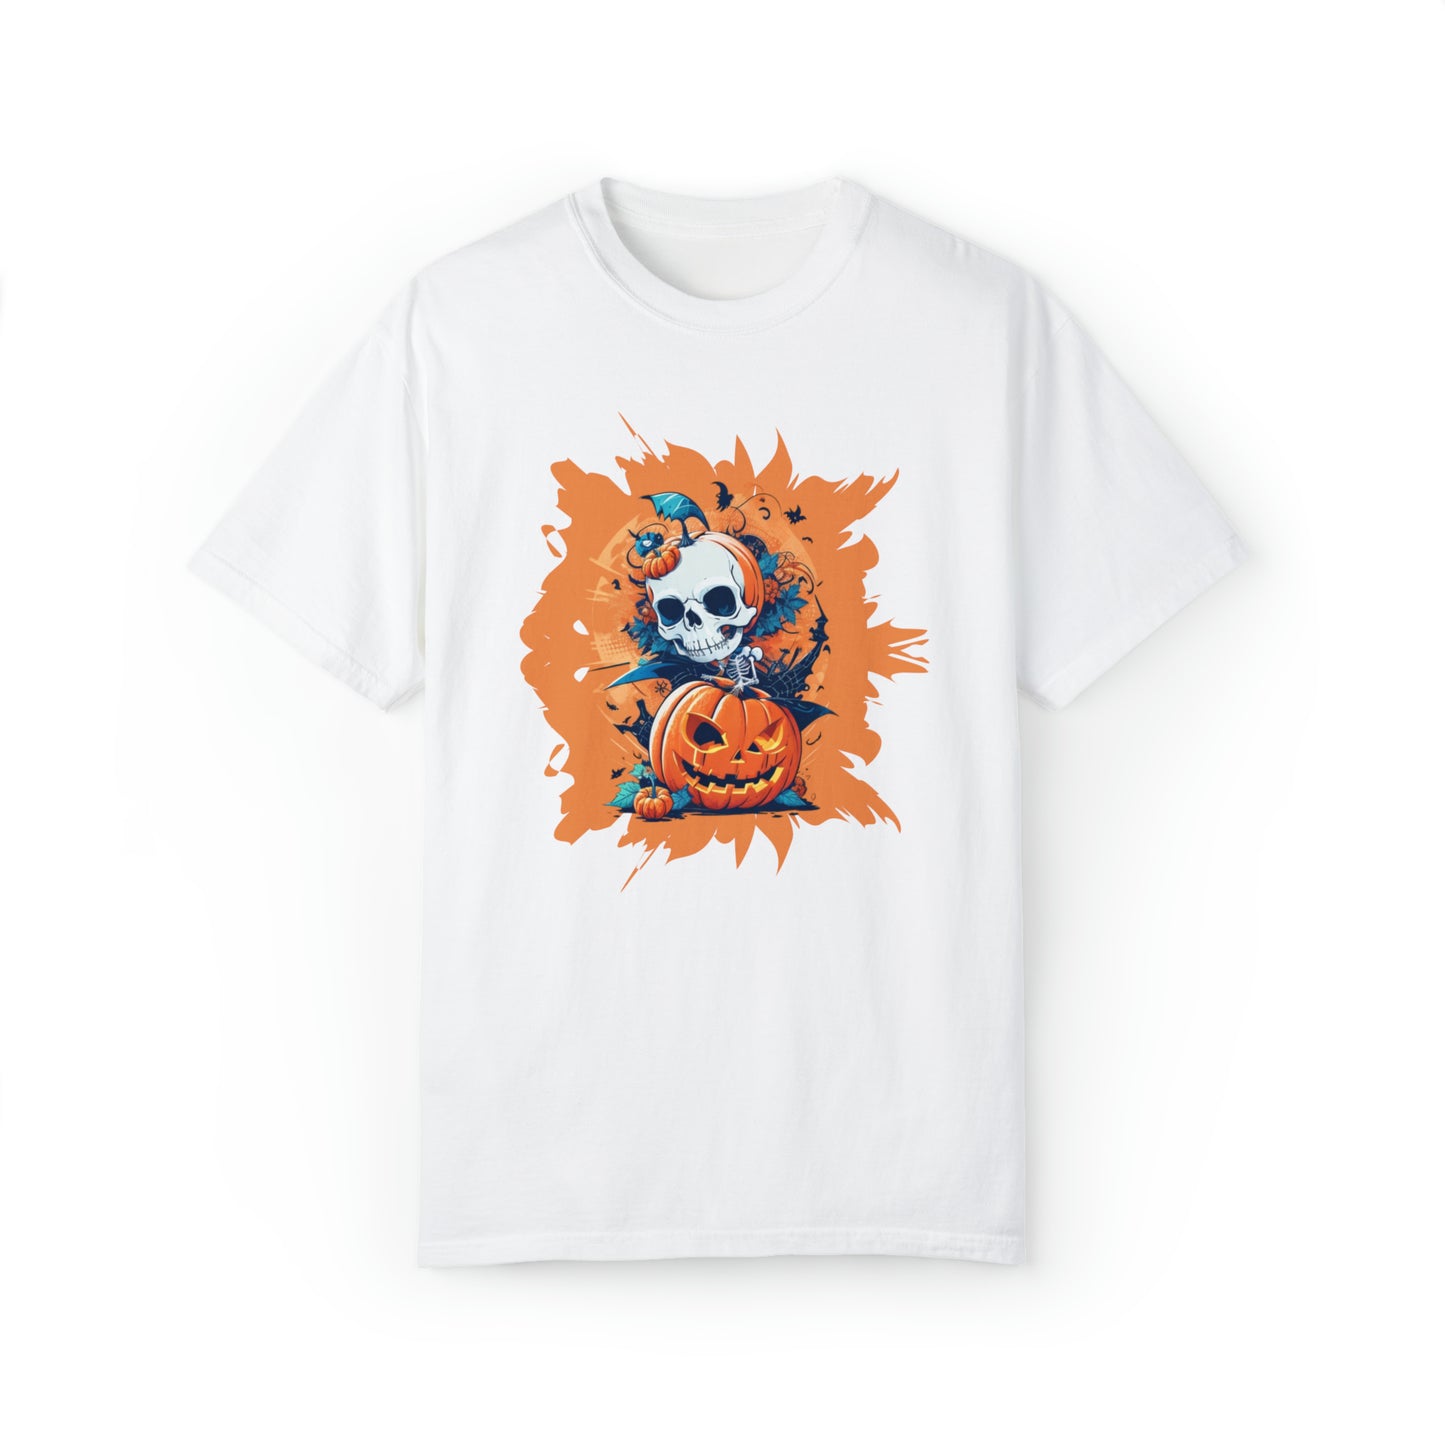 Unisex Garment-Dyed T-shirt - Halloween -  Skull and pumpkins